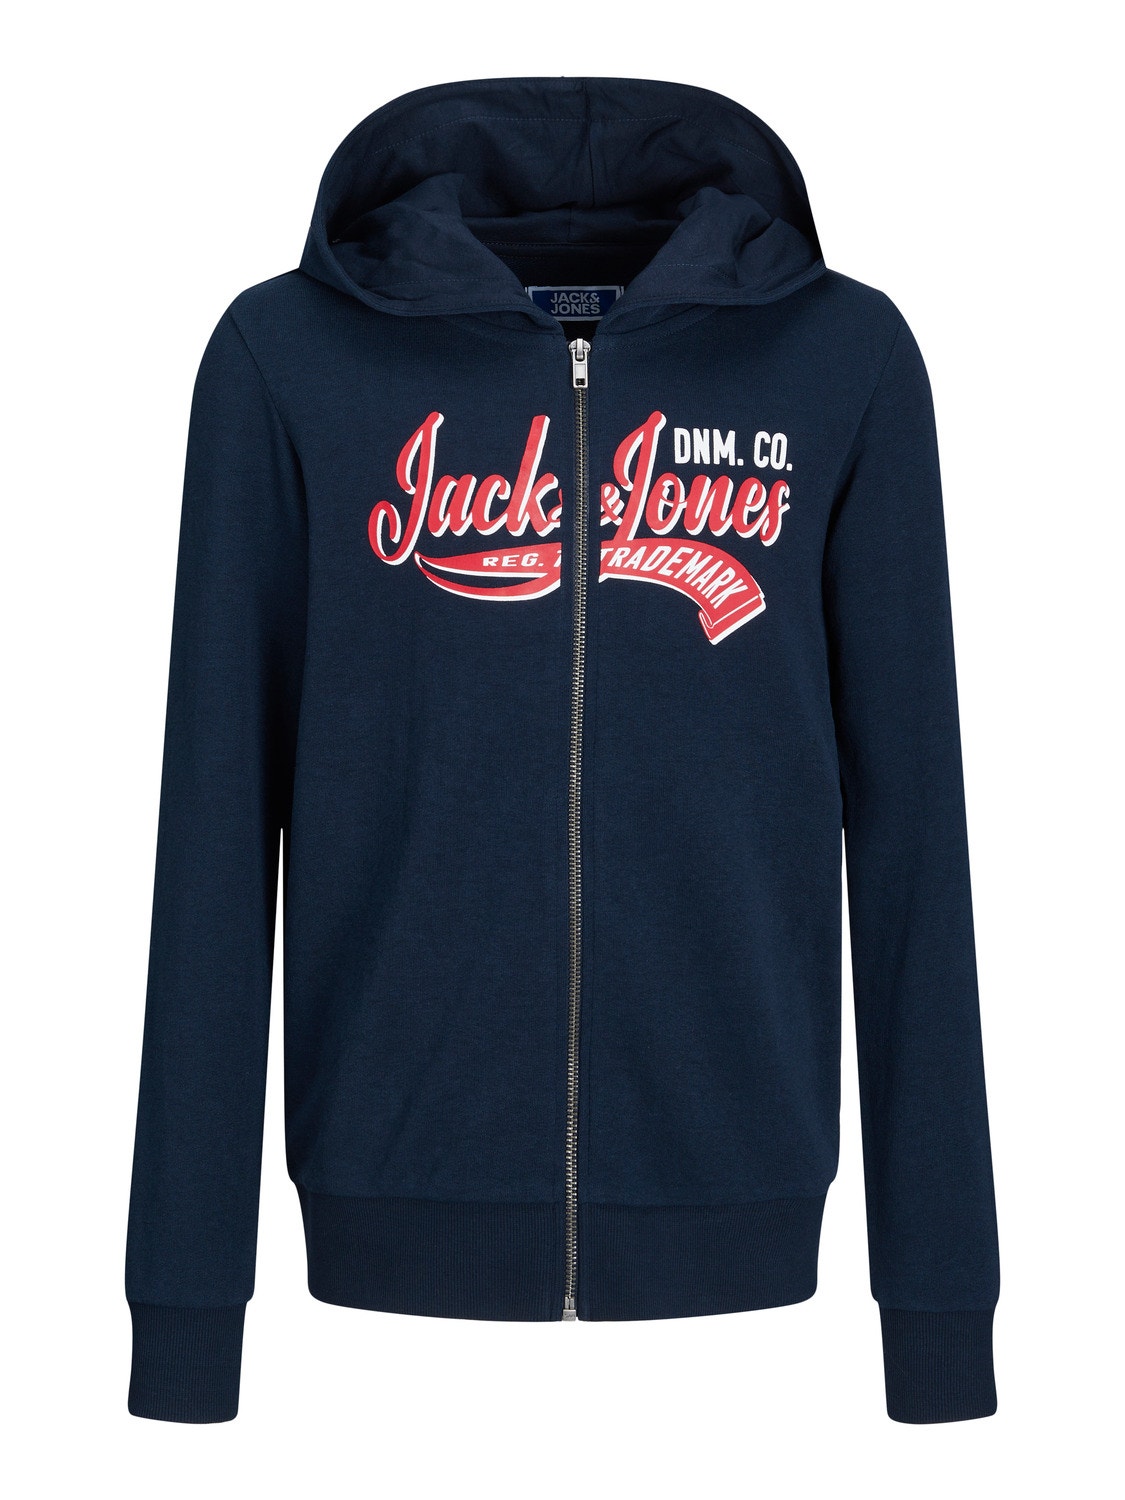 Jack & Jones Printed Zip Hoodie For boys -Navy Blazer - 12237429